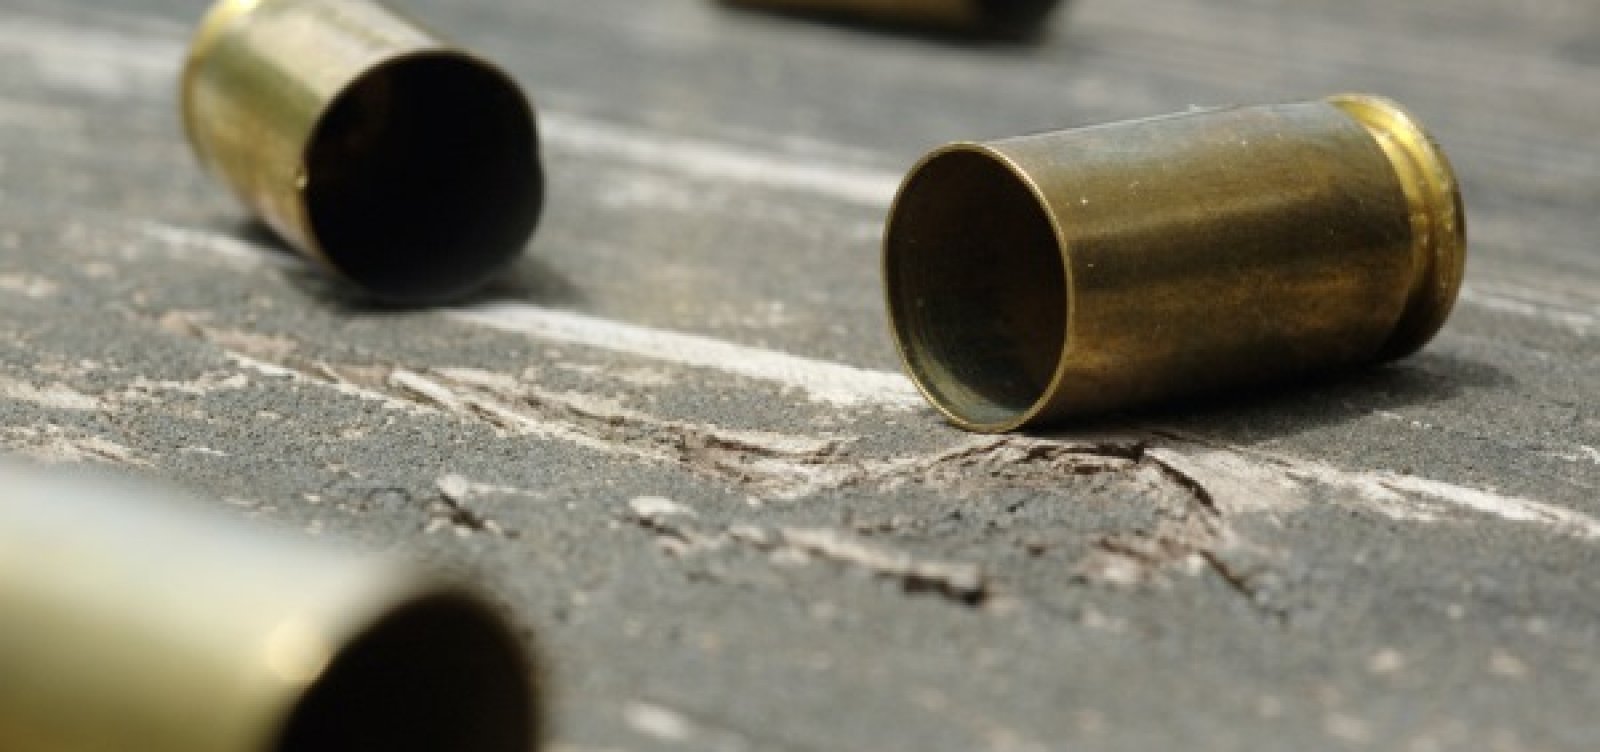 Estado deve indenizar vítimas de "bala perdida" em operações policiais, decide o STF